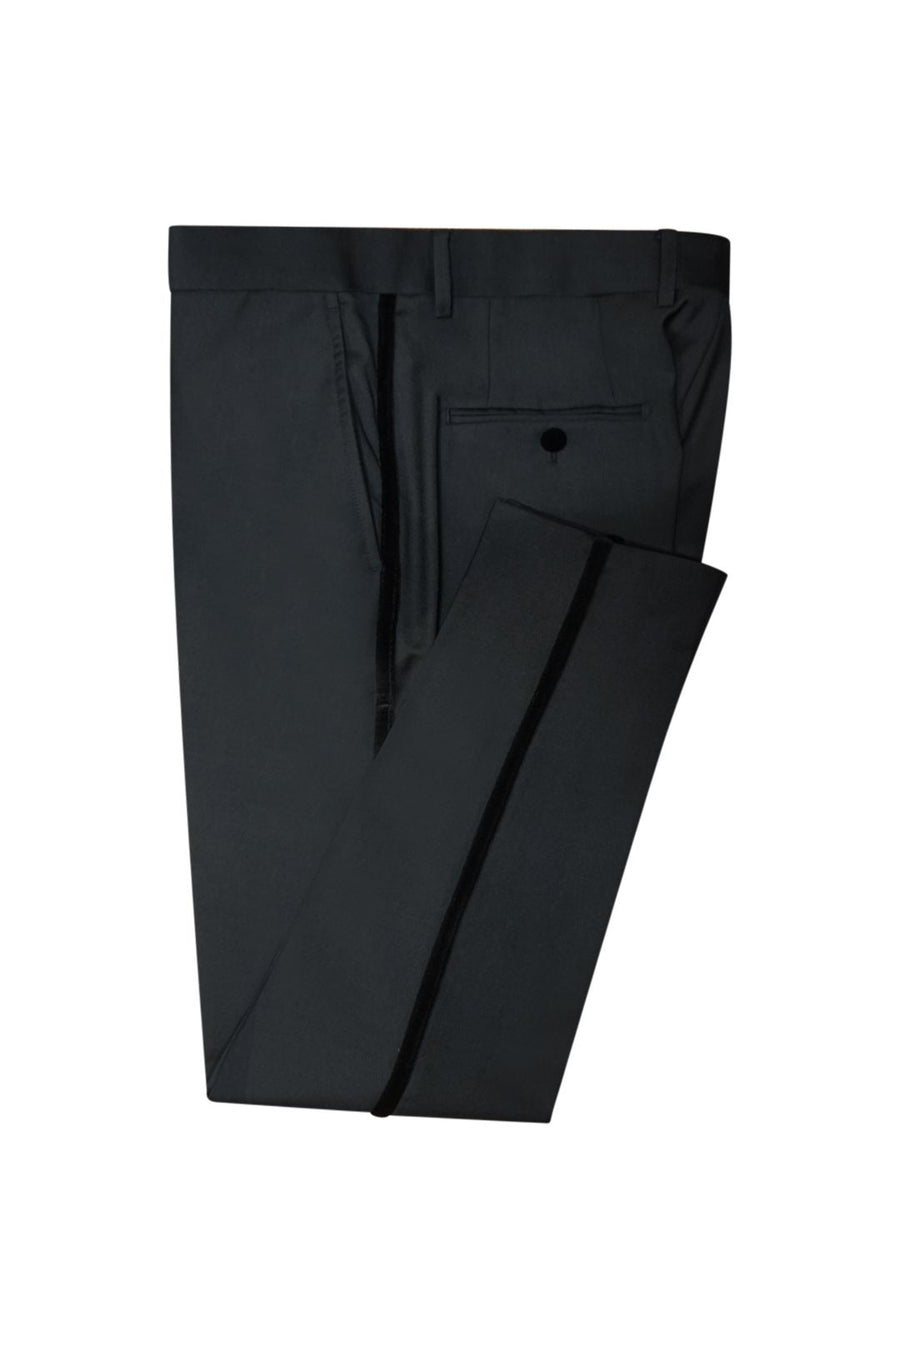 Midnight Black Slim Fit Tuxedo Pant (Velvet Stripe) – Ainsley & Troupe, LLC